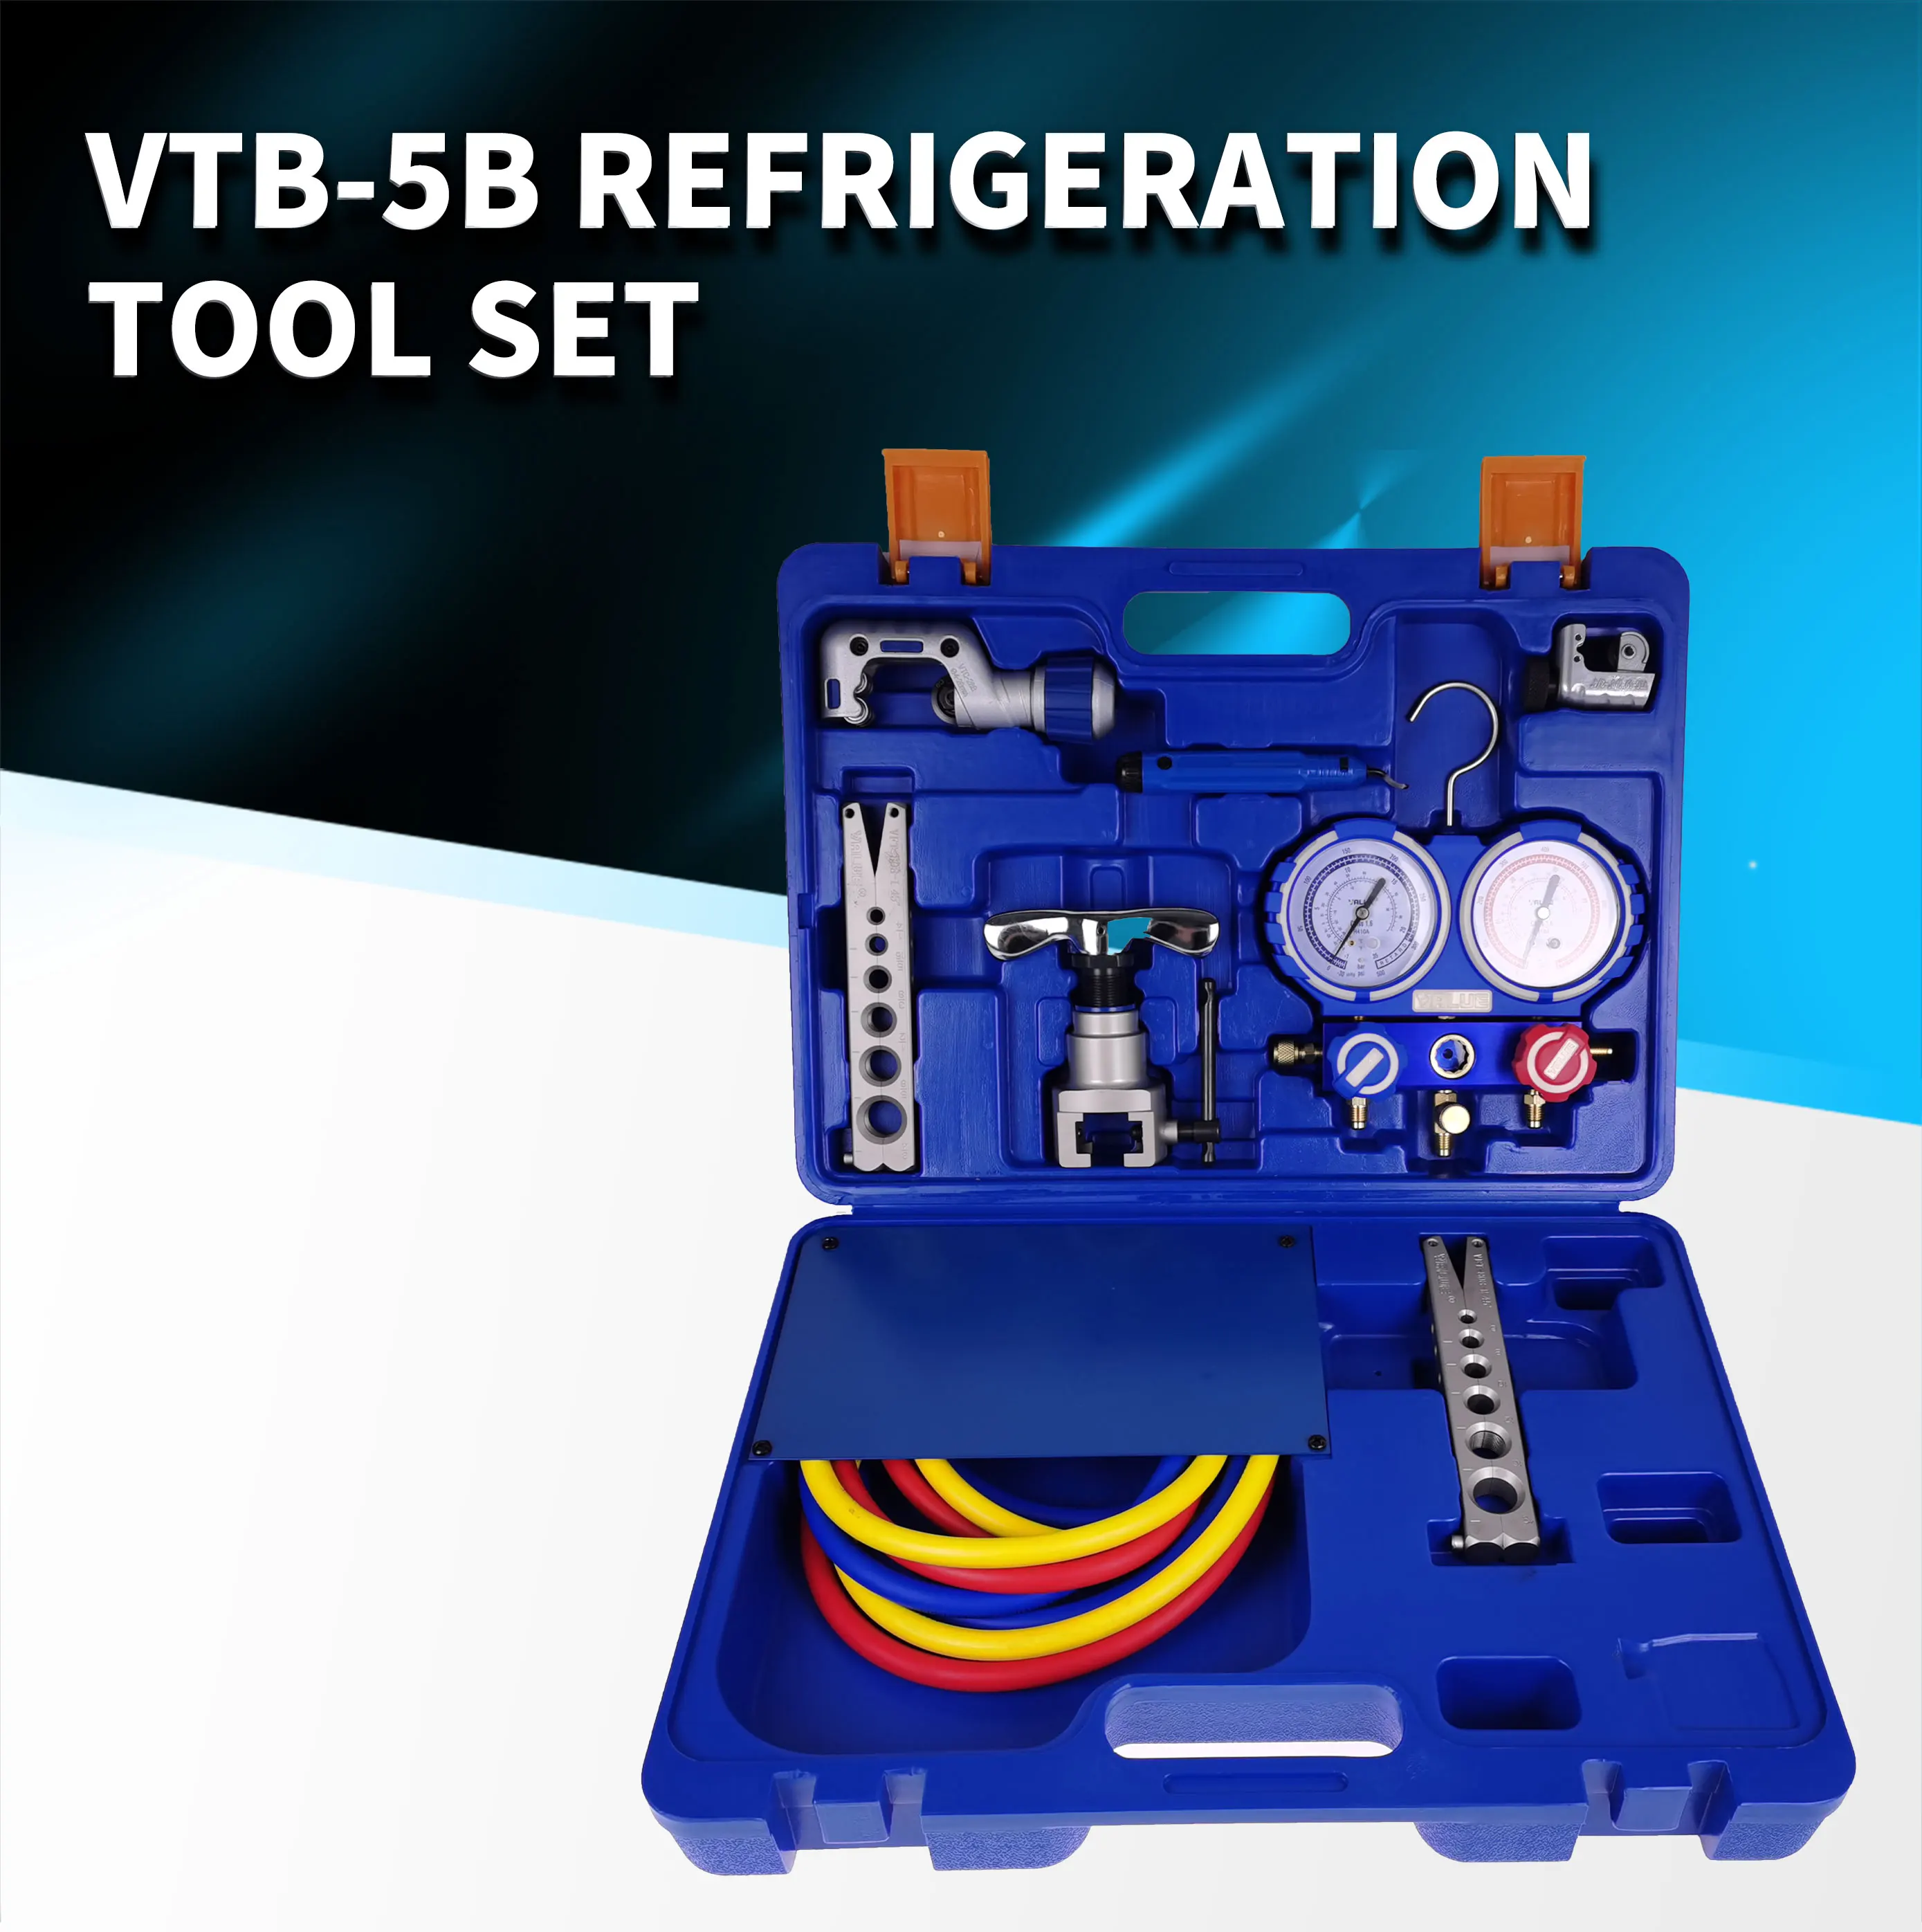 Refrigeração Integrado queima de kits de ferramentas VTB-5B Refrigeração da ferramenta de conjunto Expansor conjunto com medidor de pressão do líquido refrigerante de R410A